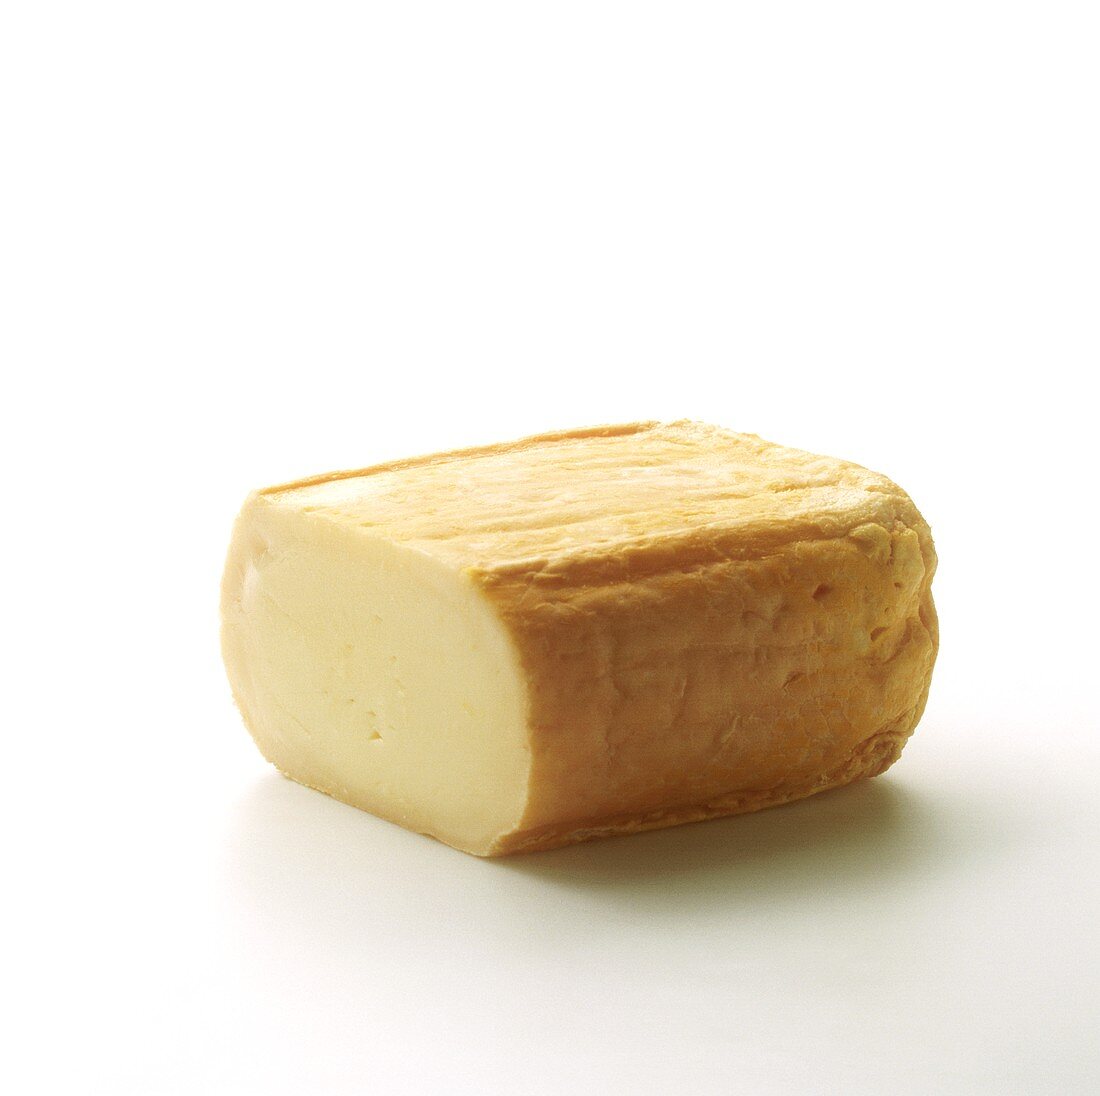 Angeschnittener Limburger Käse